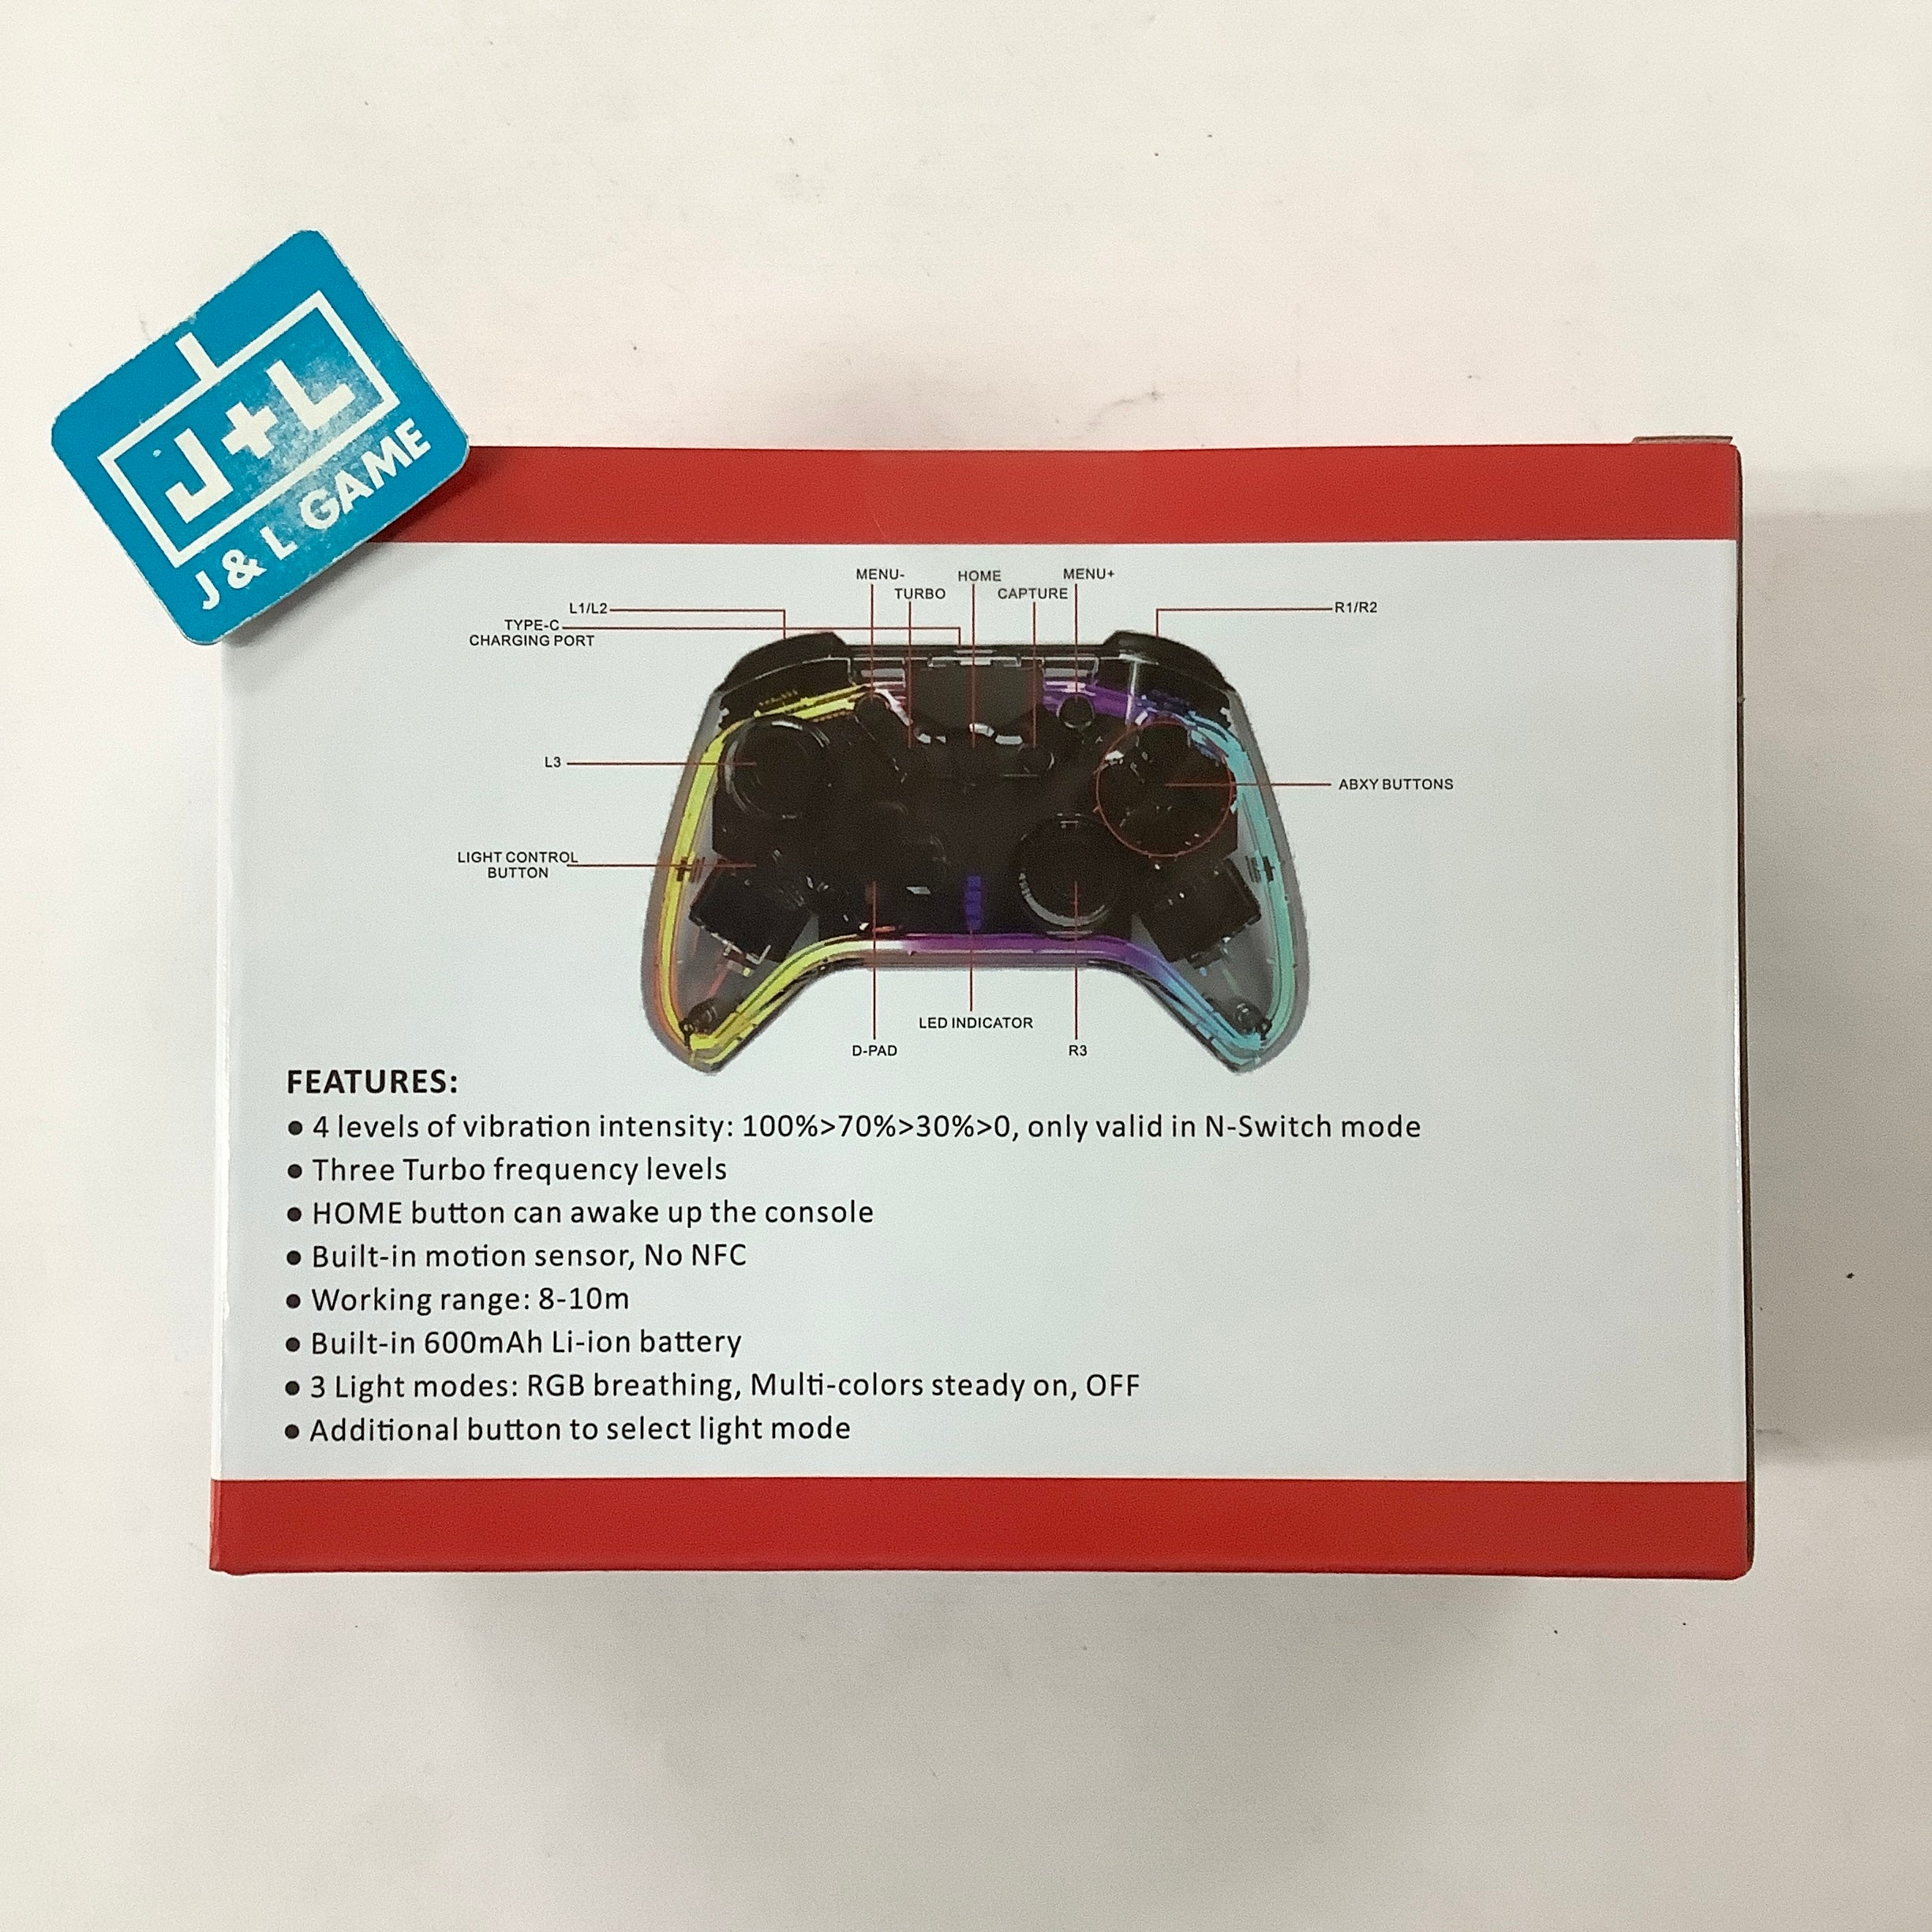 NEXiLUX Nexiglow Wireless RGB Controller - (NSW) Nintendo Switch Accessories NEXiLUX   